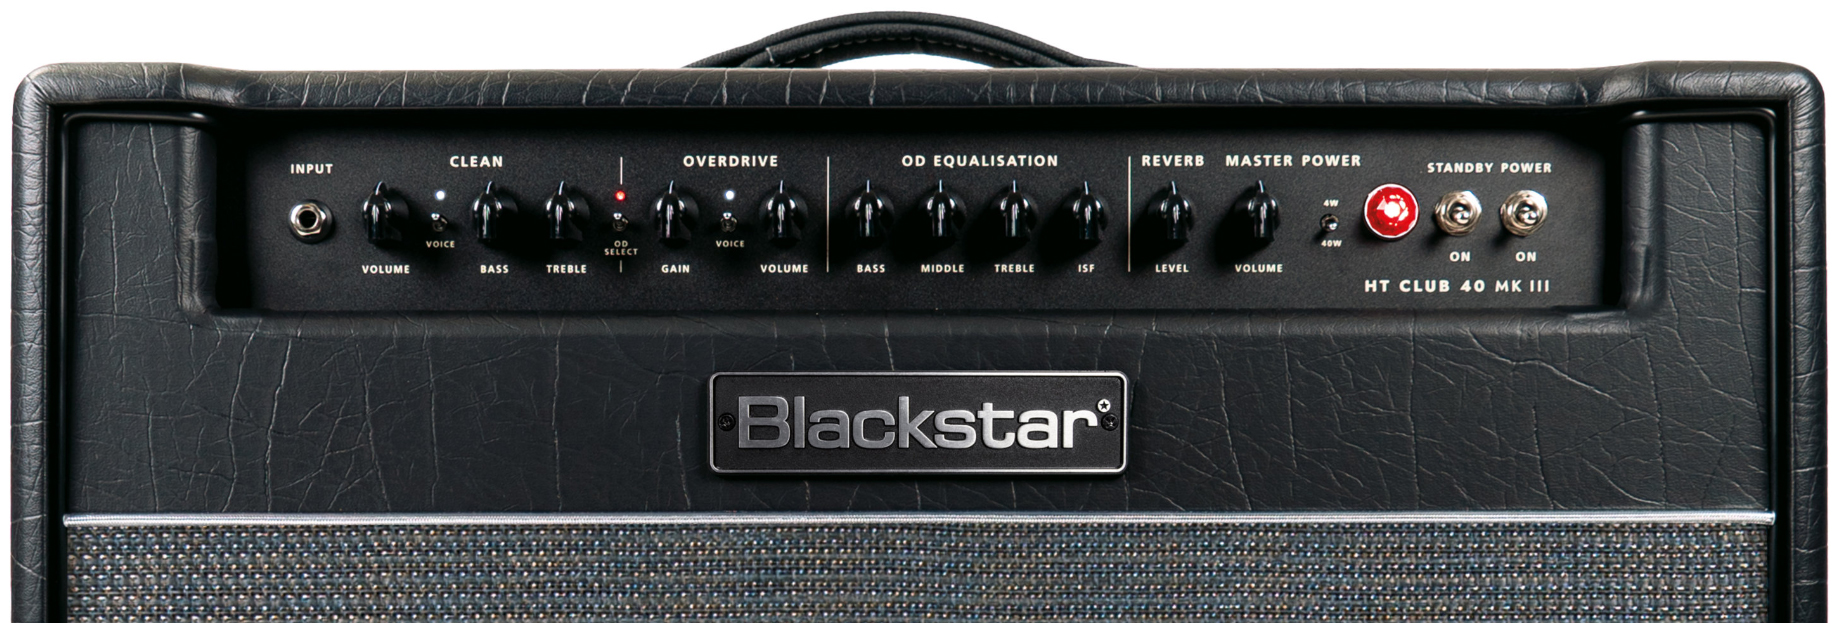 Blackstar Ht Venue Club 40 112 Mkiii 40w 1x12 El34 - Electric guitar combo amp - Variation 3